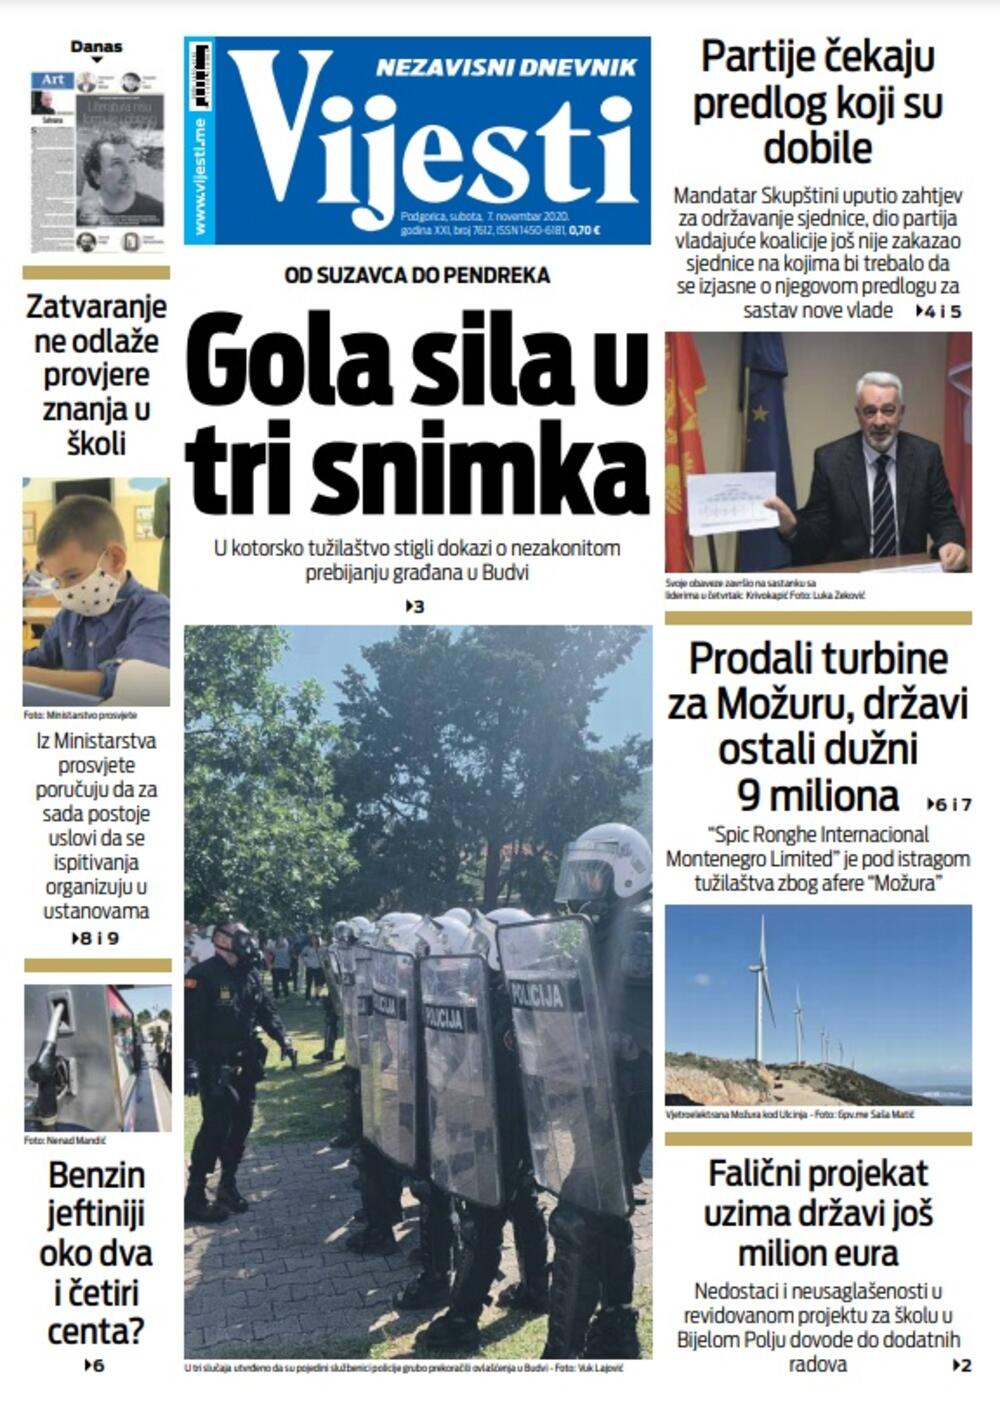 Naslovna strana "Vijesti" za subotu 7. novembar 2020. godine, Foto: Vijesti